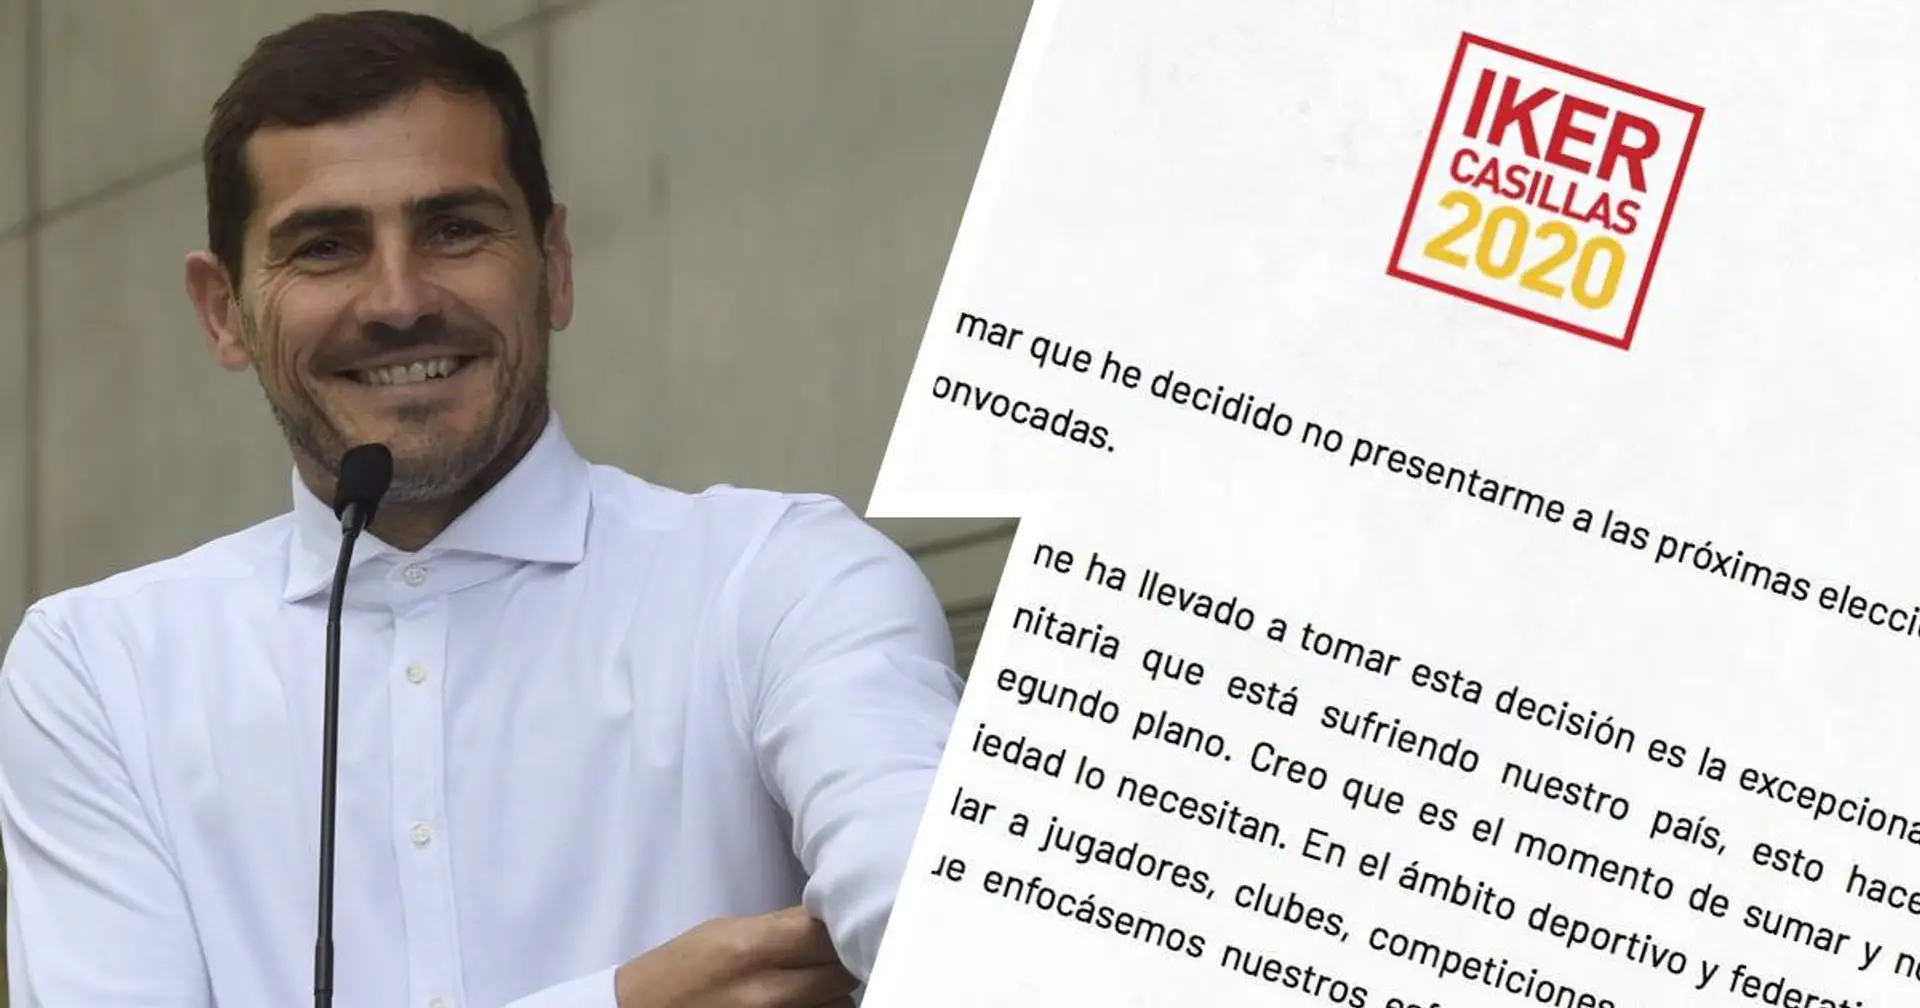 "Un exemple clair du meilleur du football" , Alvaro Gonzalez rend hommage à Iker Casillas aprés son départ à la retraire